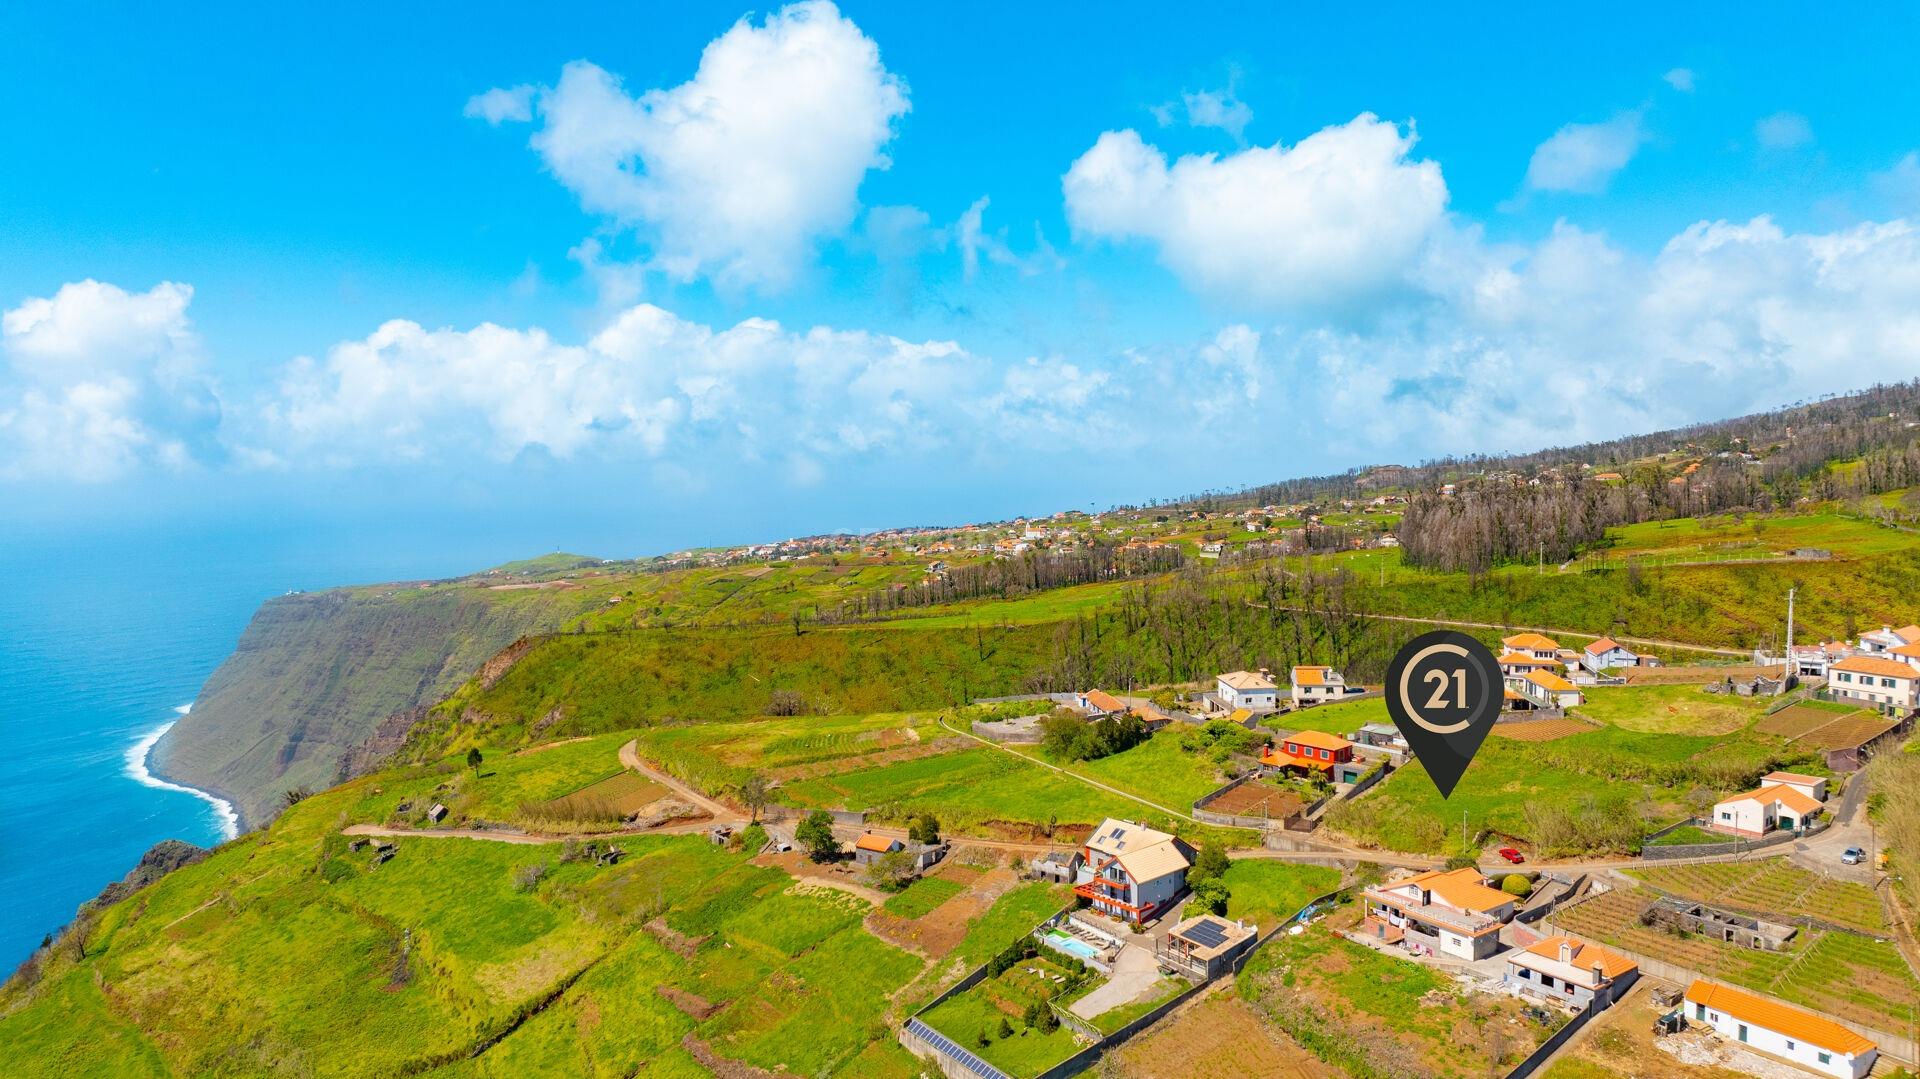 Terreno Rústico de 1050 m² - Fajã da Ovelha, Madeira